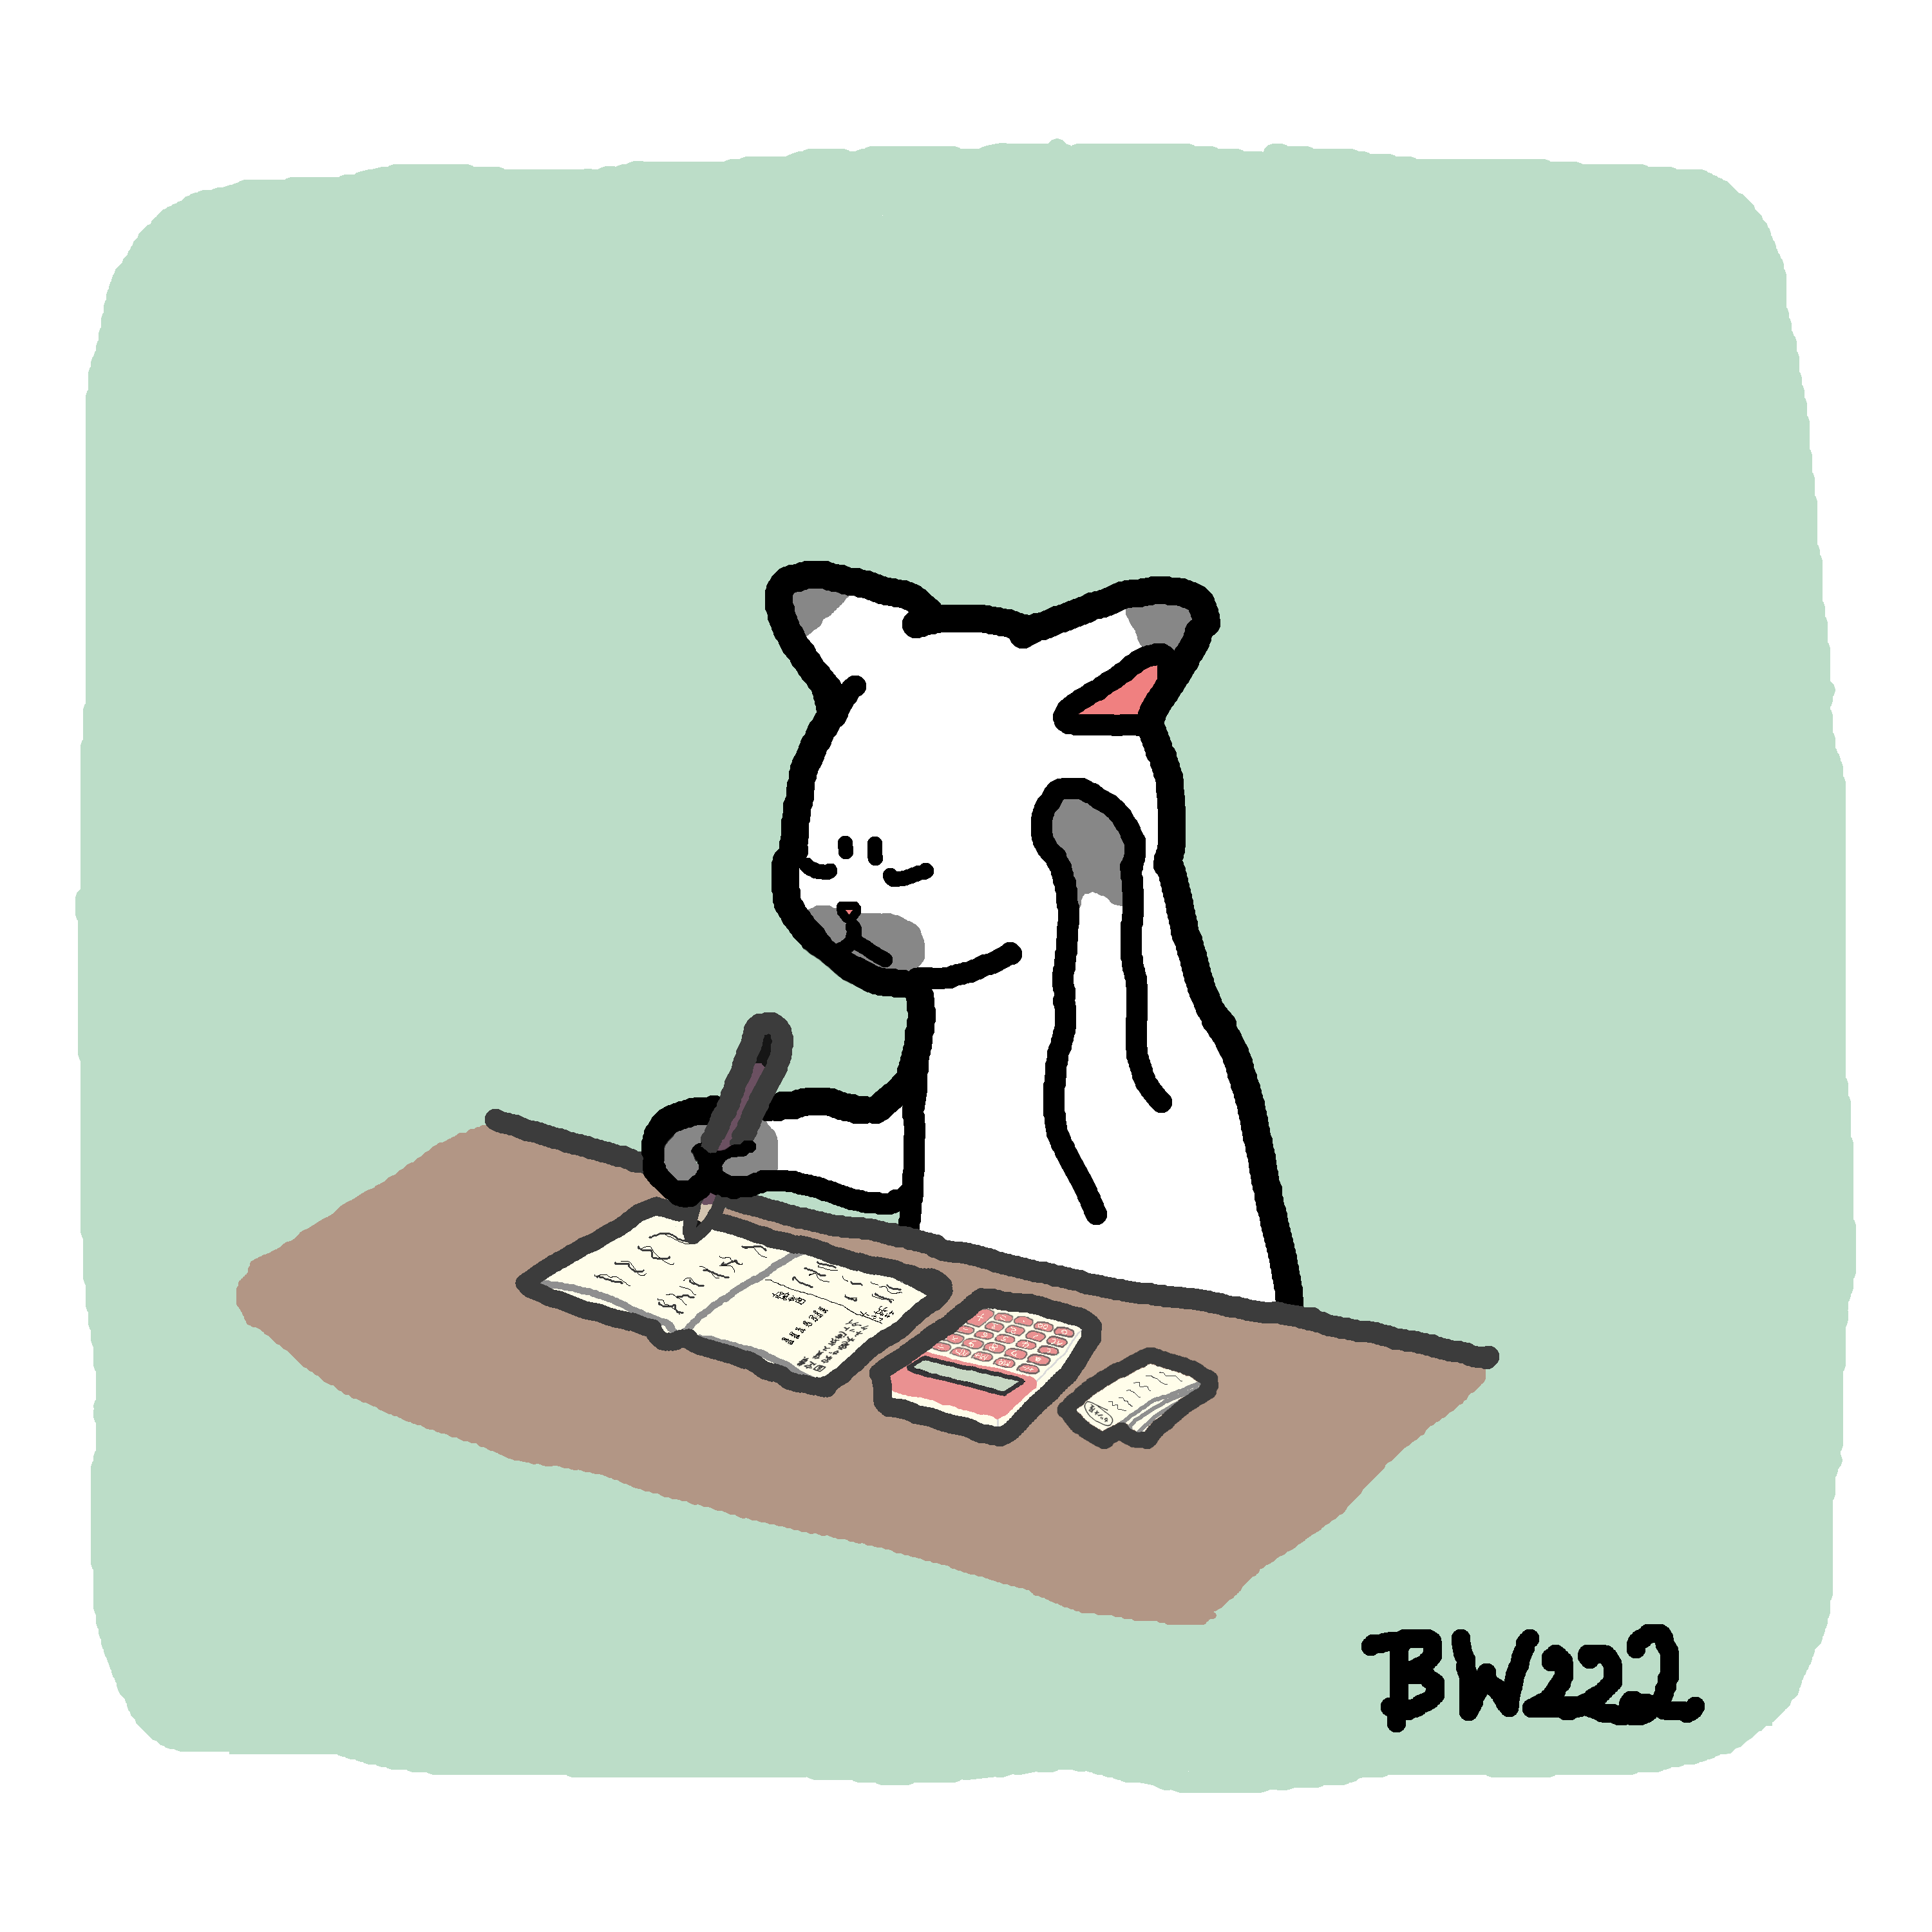 くろもり 月末なので家計簿をつけて振り返っているネコさんを描きました 家計簿 節約術 電卓 レシート 財布と合わない 描いたことに意味がある 自己暗示 健康大事 イラスト ゆるいイラスト Illustration 創作 猫 イラスト練習中 T